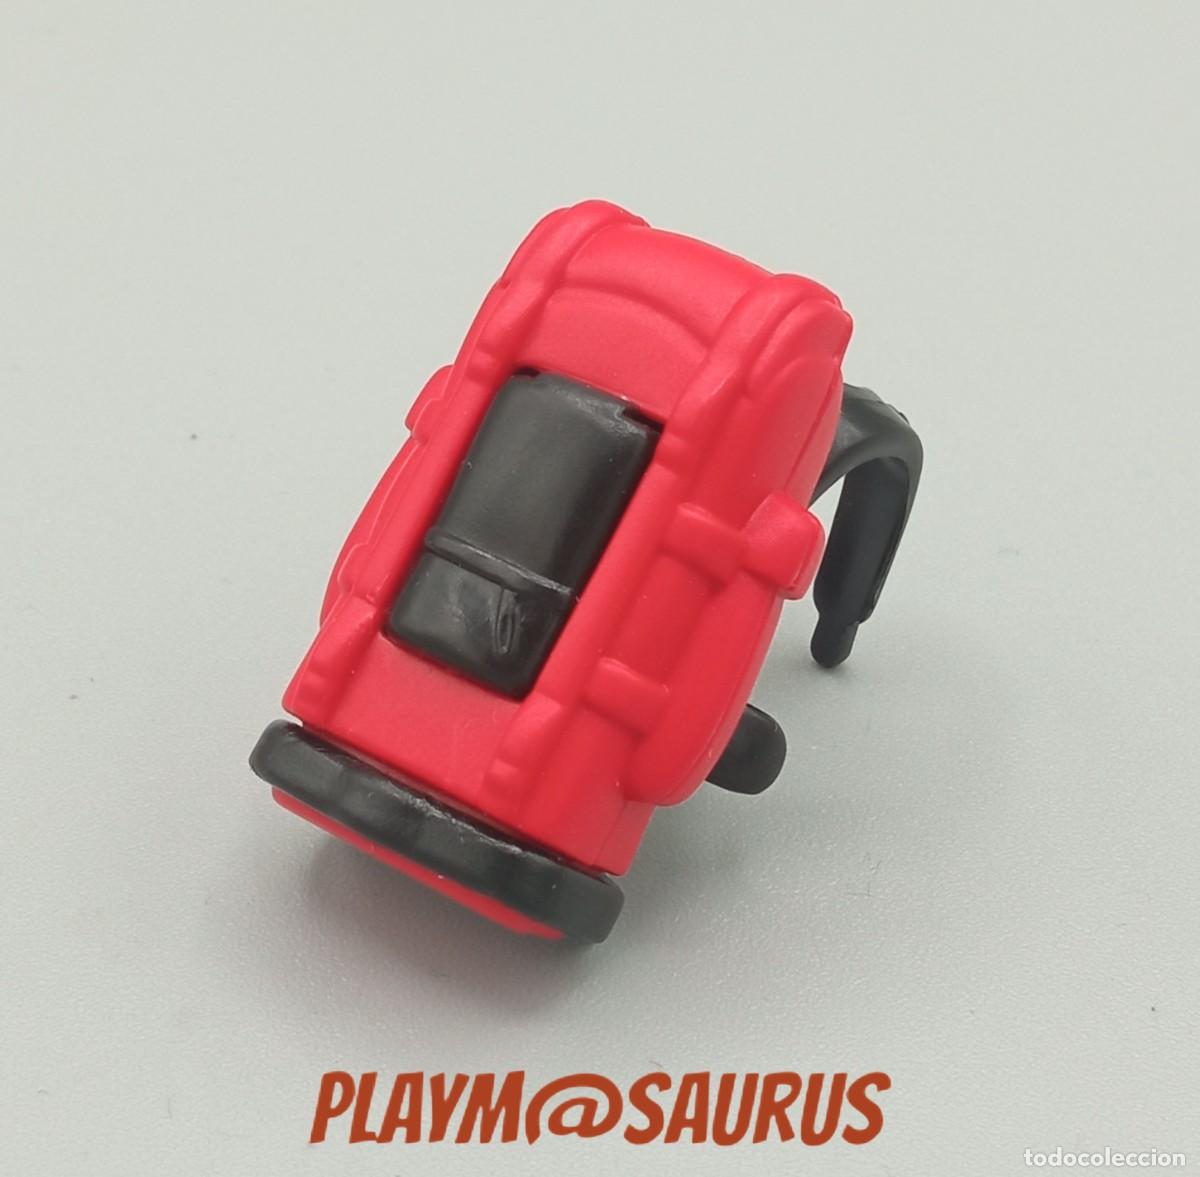 playmobil, grande roja - Compra venta en todocoleccion